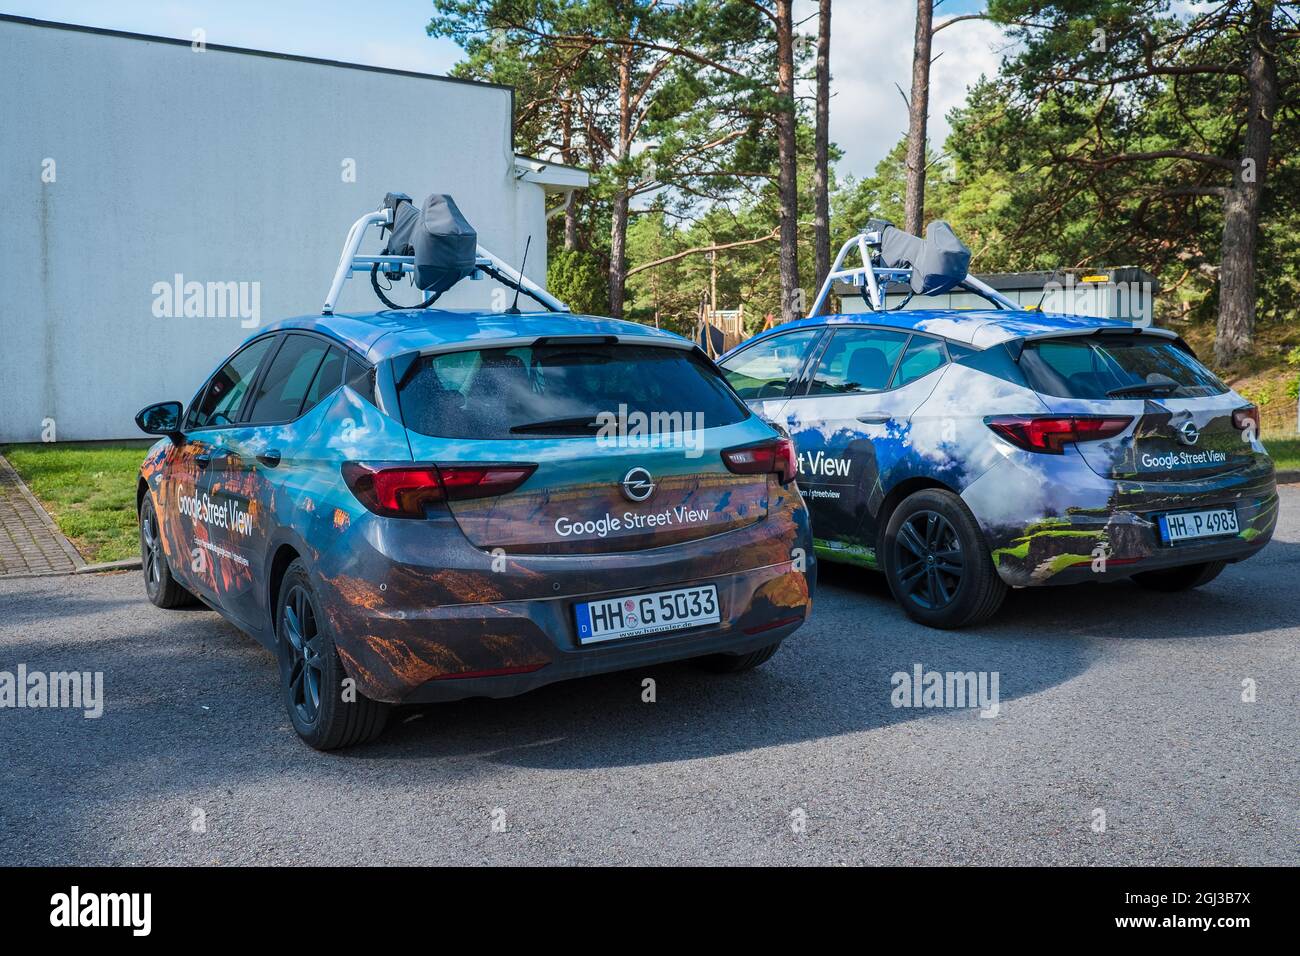 Zwei Google Street View Autos in ländlicher Umgebung geparkt. Google-Karten-Fahrzeuge kartieren Straßen weltweit. Stockfoto